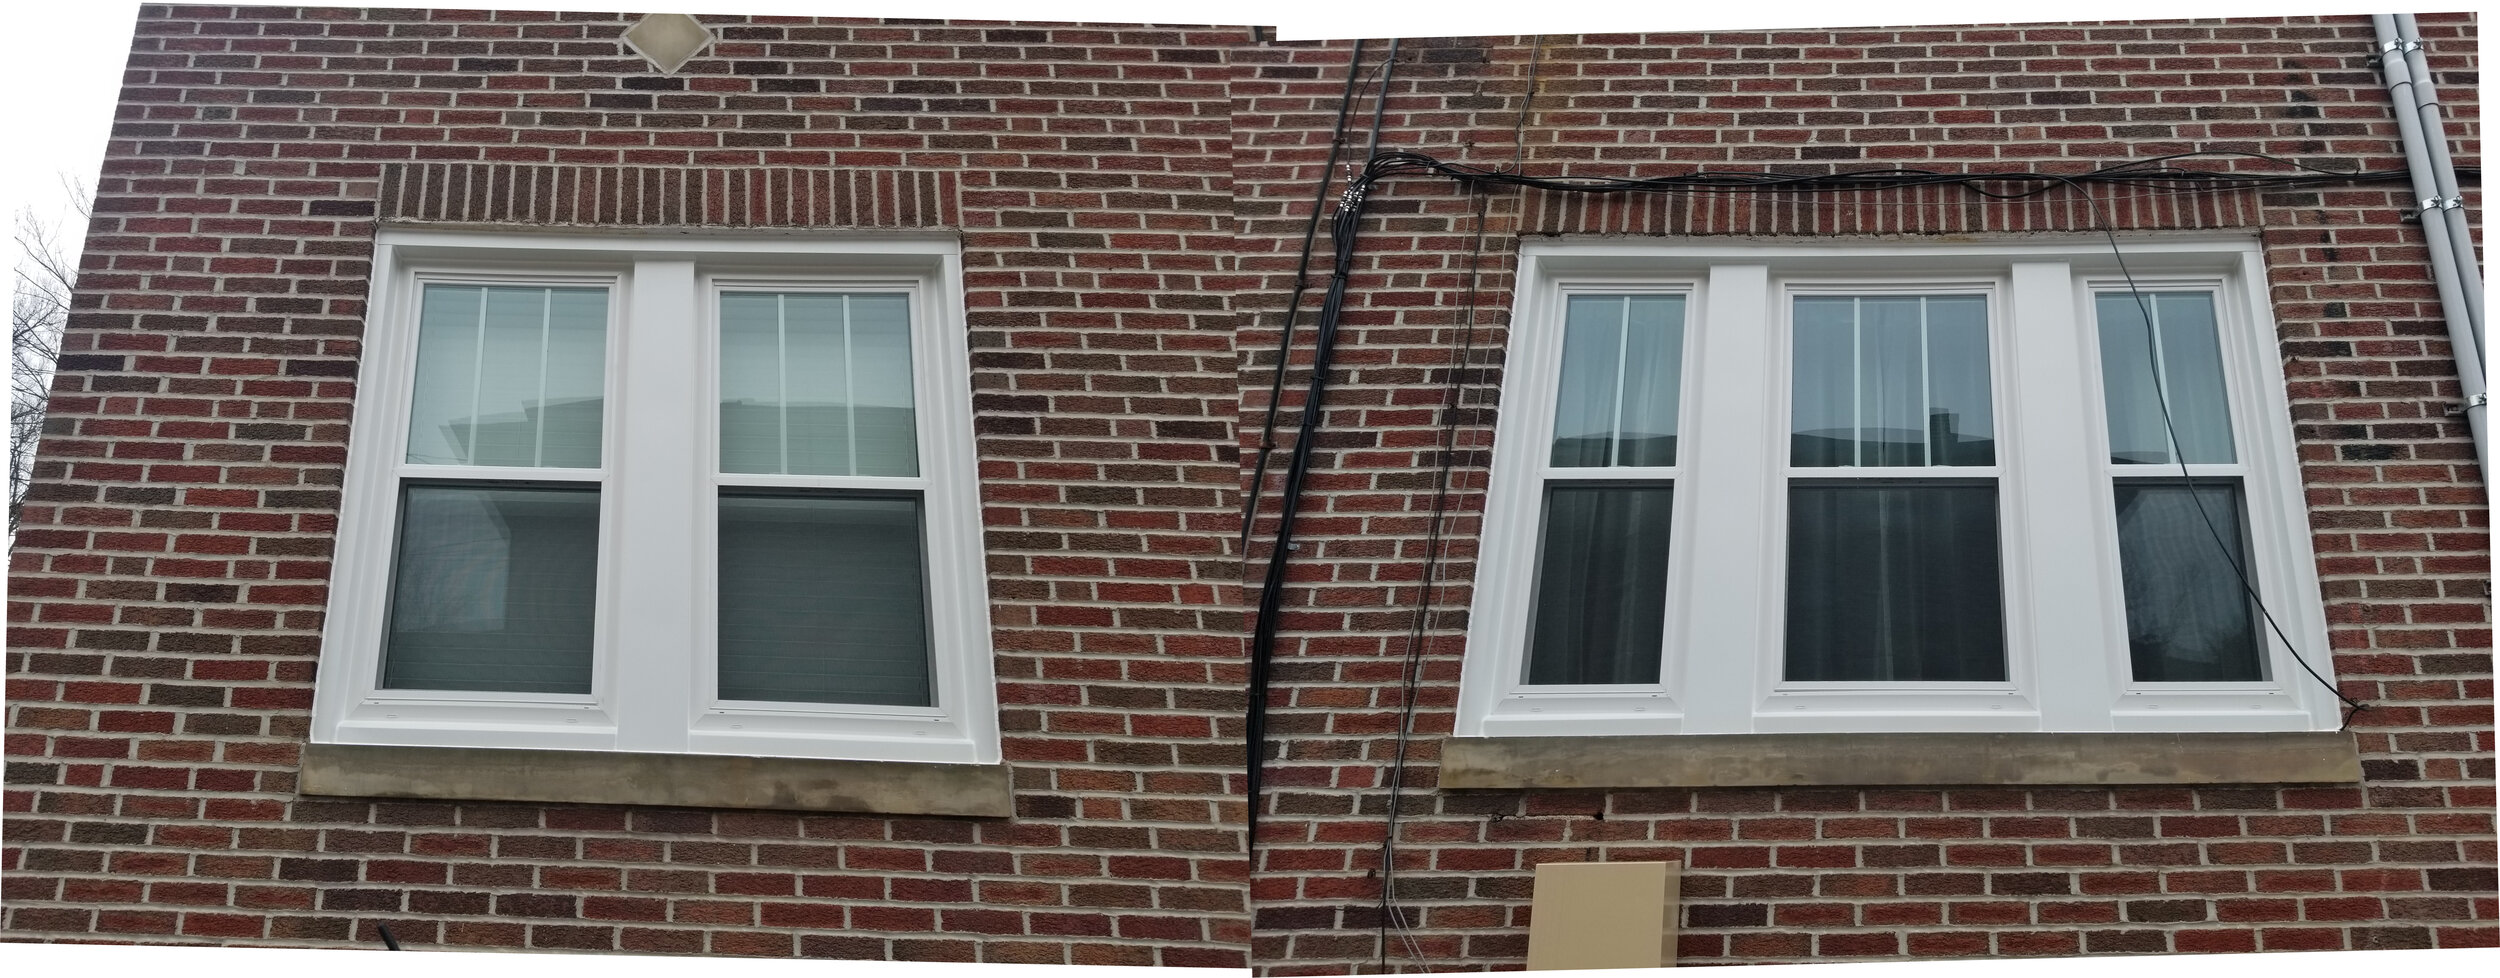 Choosing Between Single or Double Pane Windows